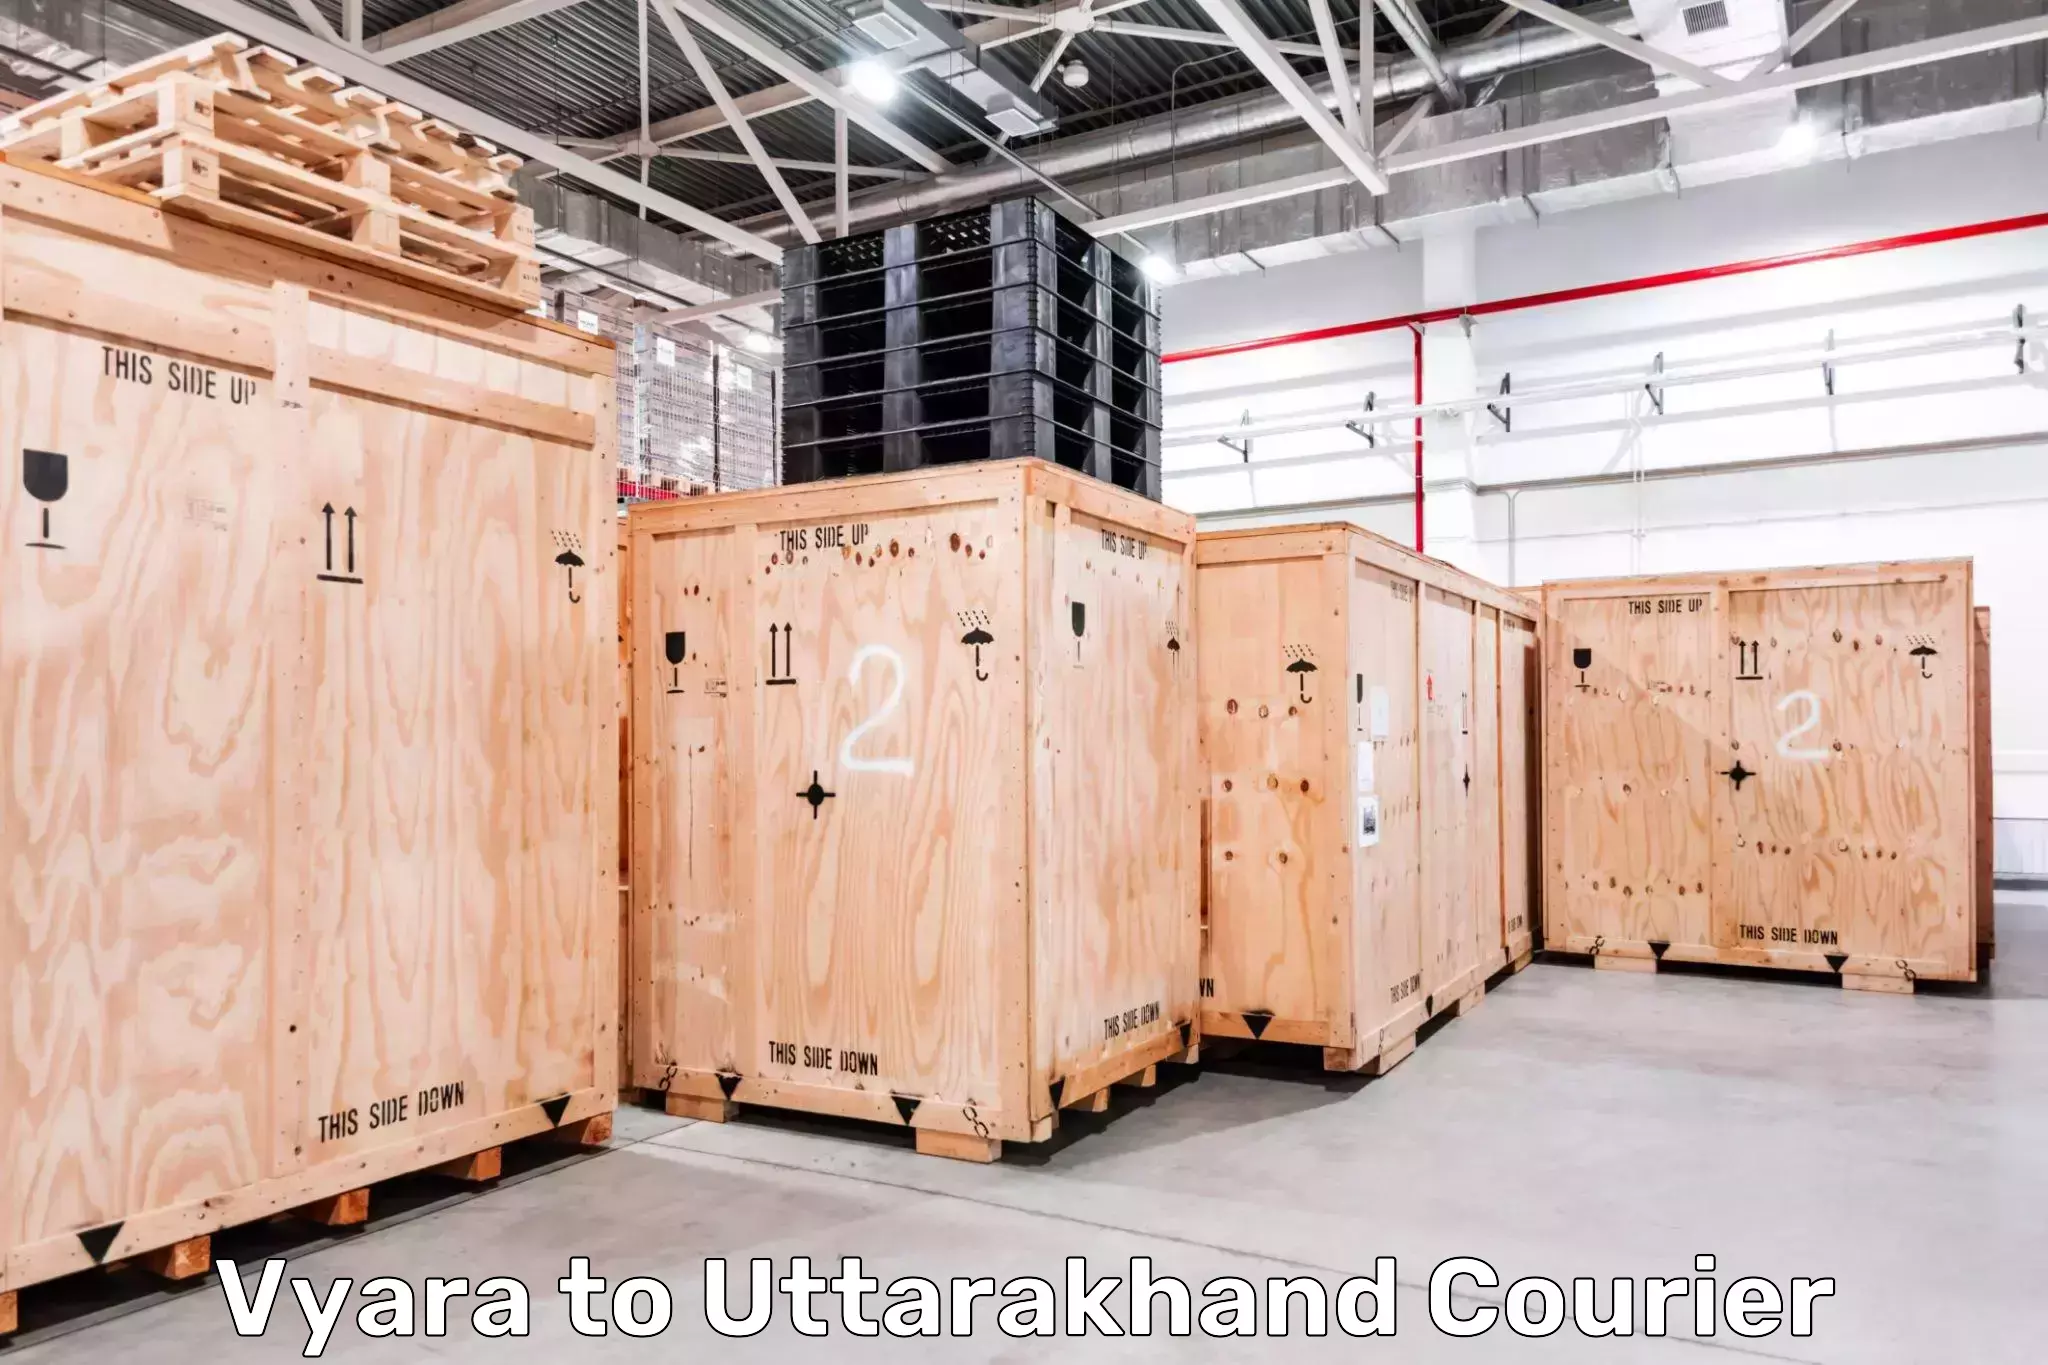 24/7 courier service Vyara to Ramnagar